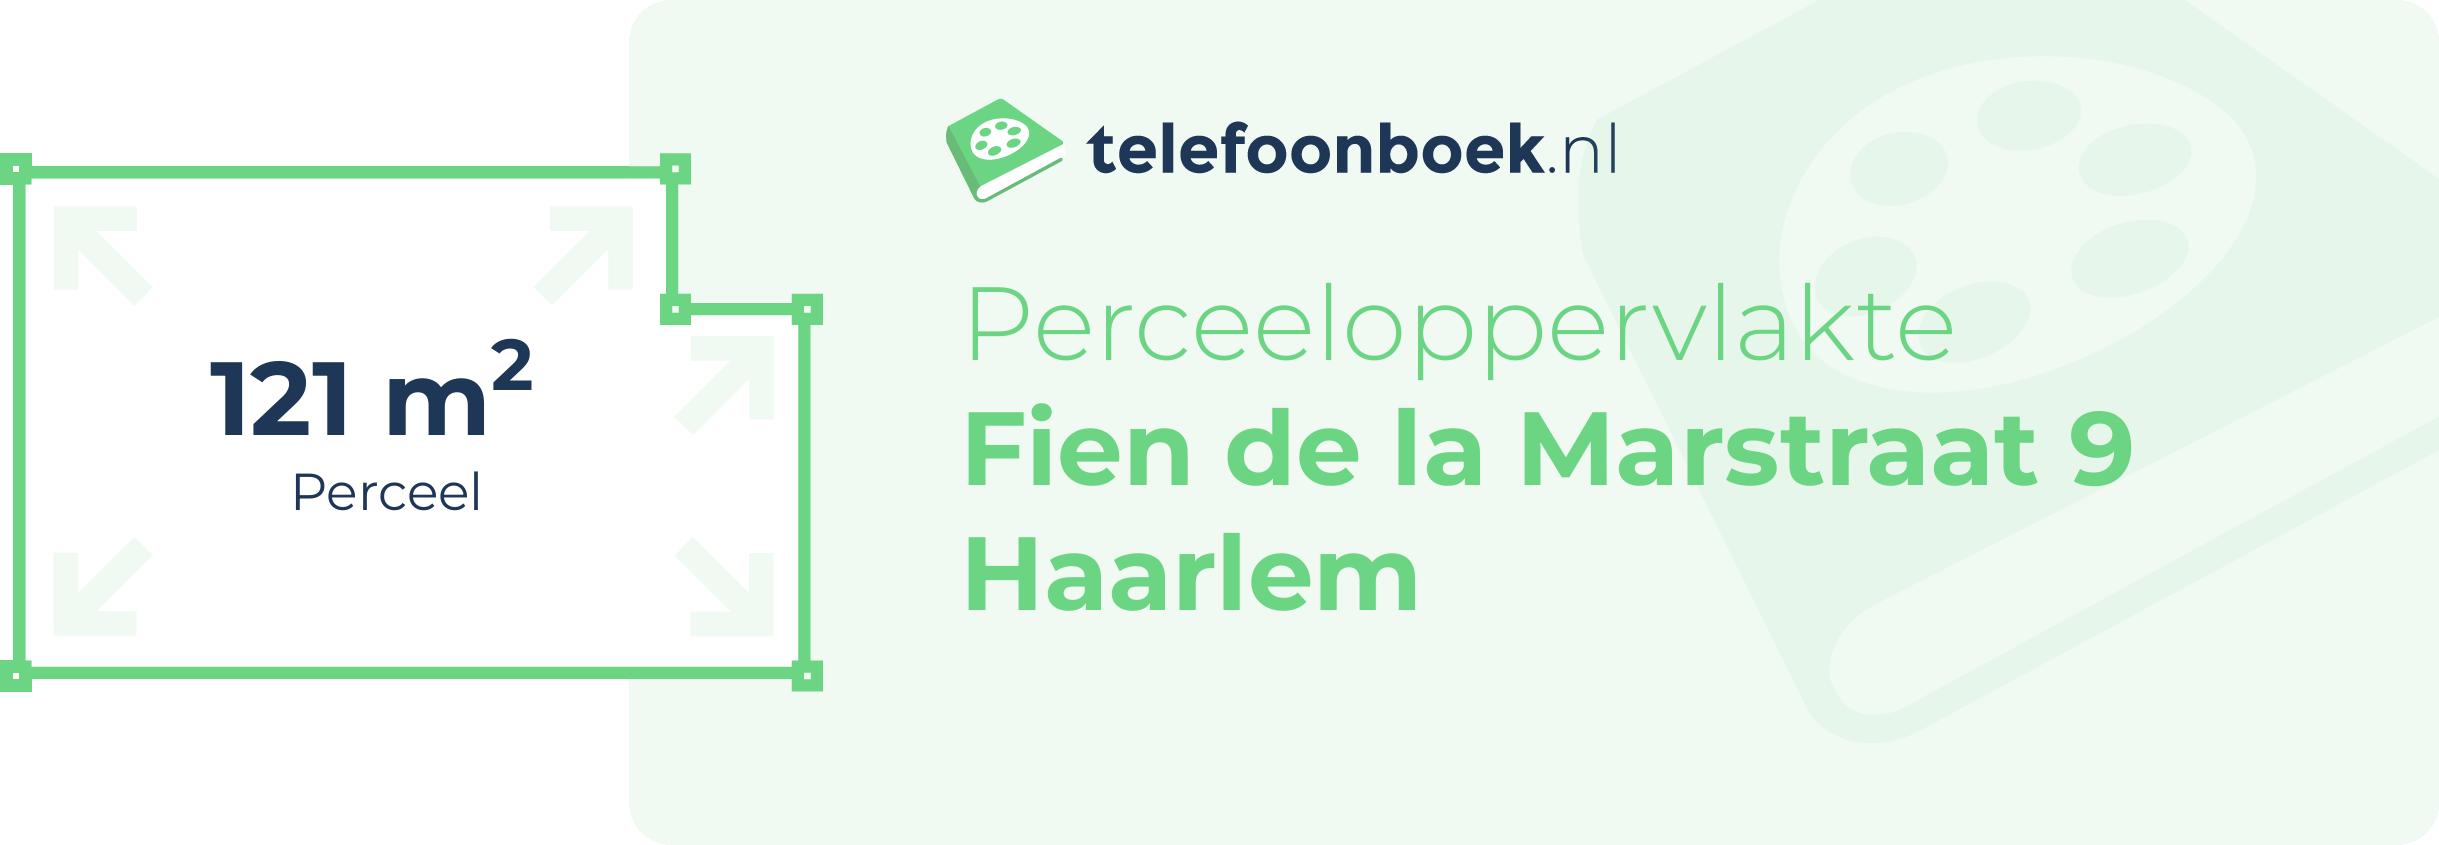 Perceeloppervlakte Fien De La Marstraat 9 Haarlem